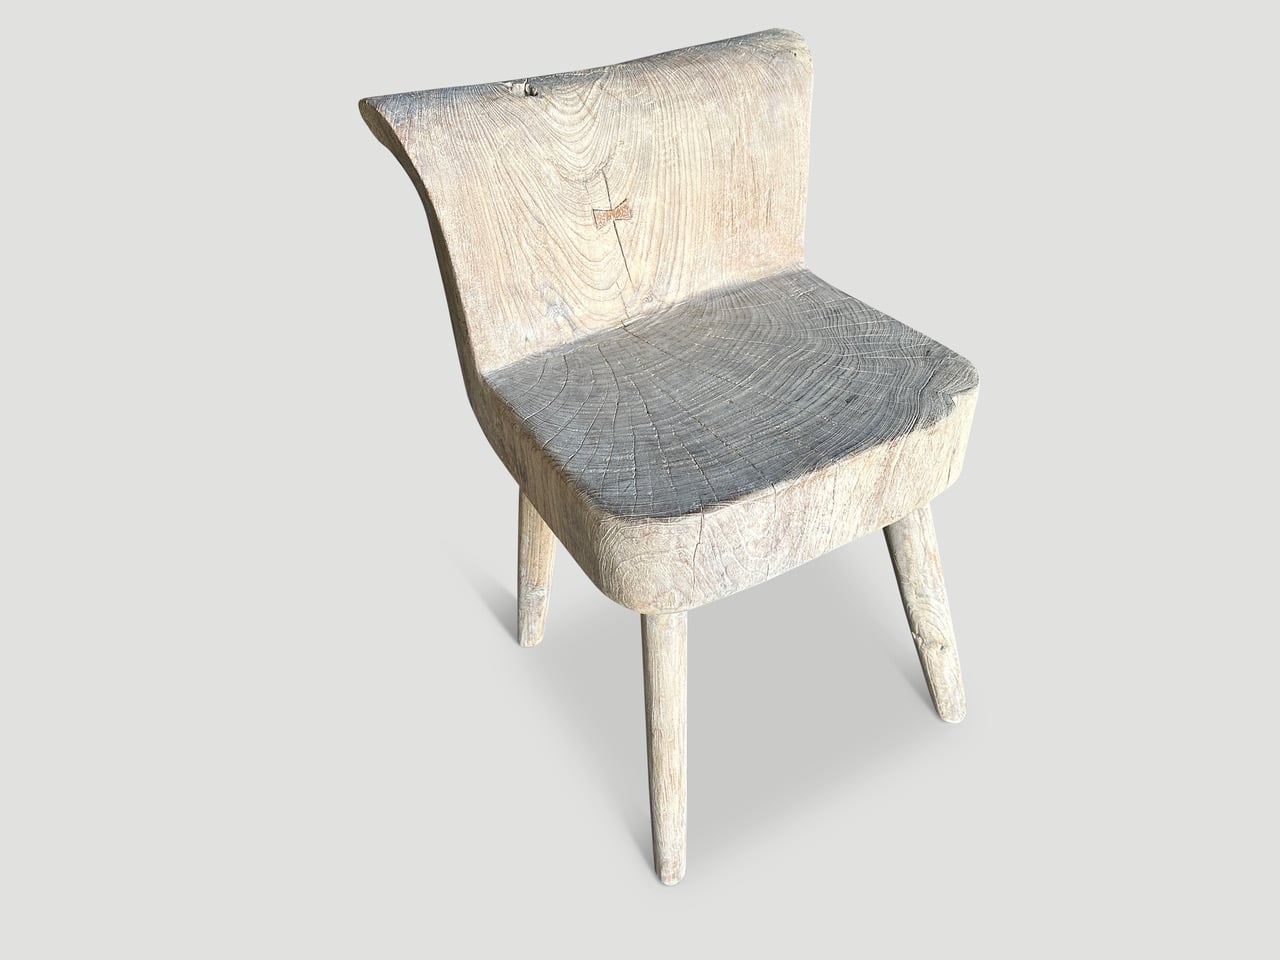 teak wood sculptural chair or side table